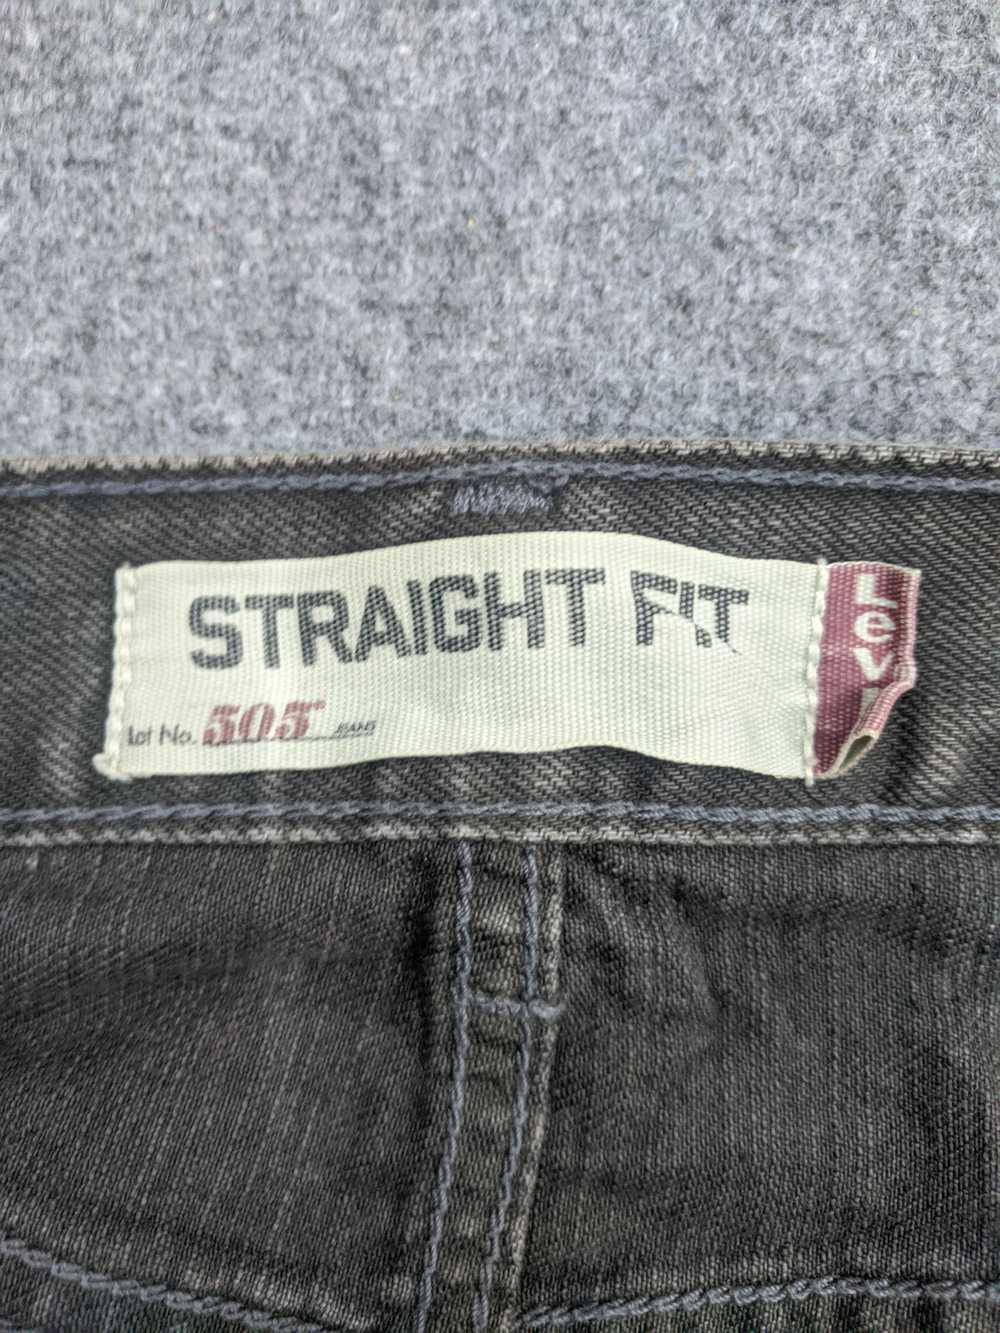 Vintage - Vintage Levis 505 Light Wash Jeans - image 9